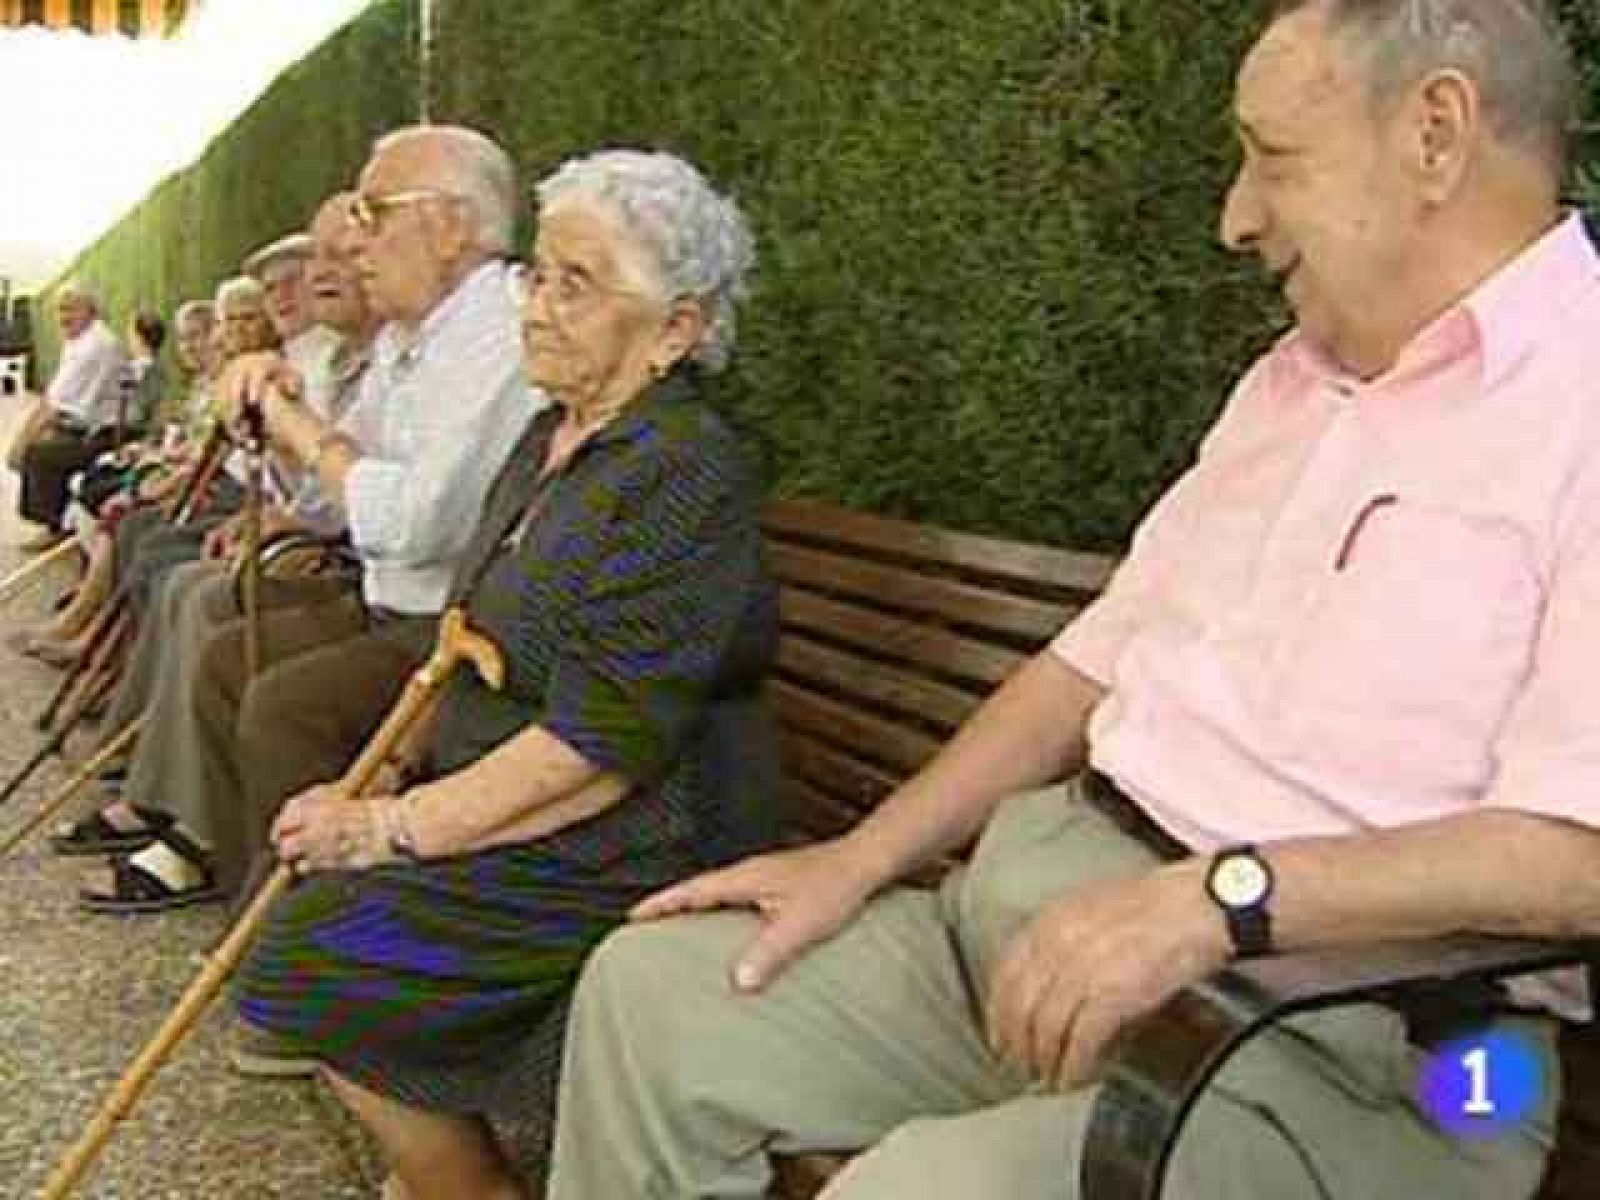 Reporteros del telediario - Aumentan las peticiones para acceder a una residencia pública de ancianos